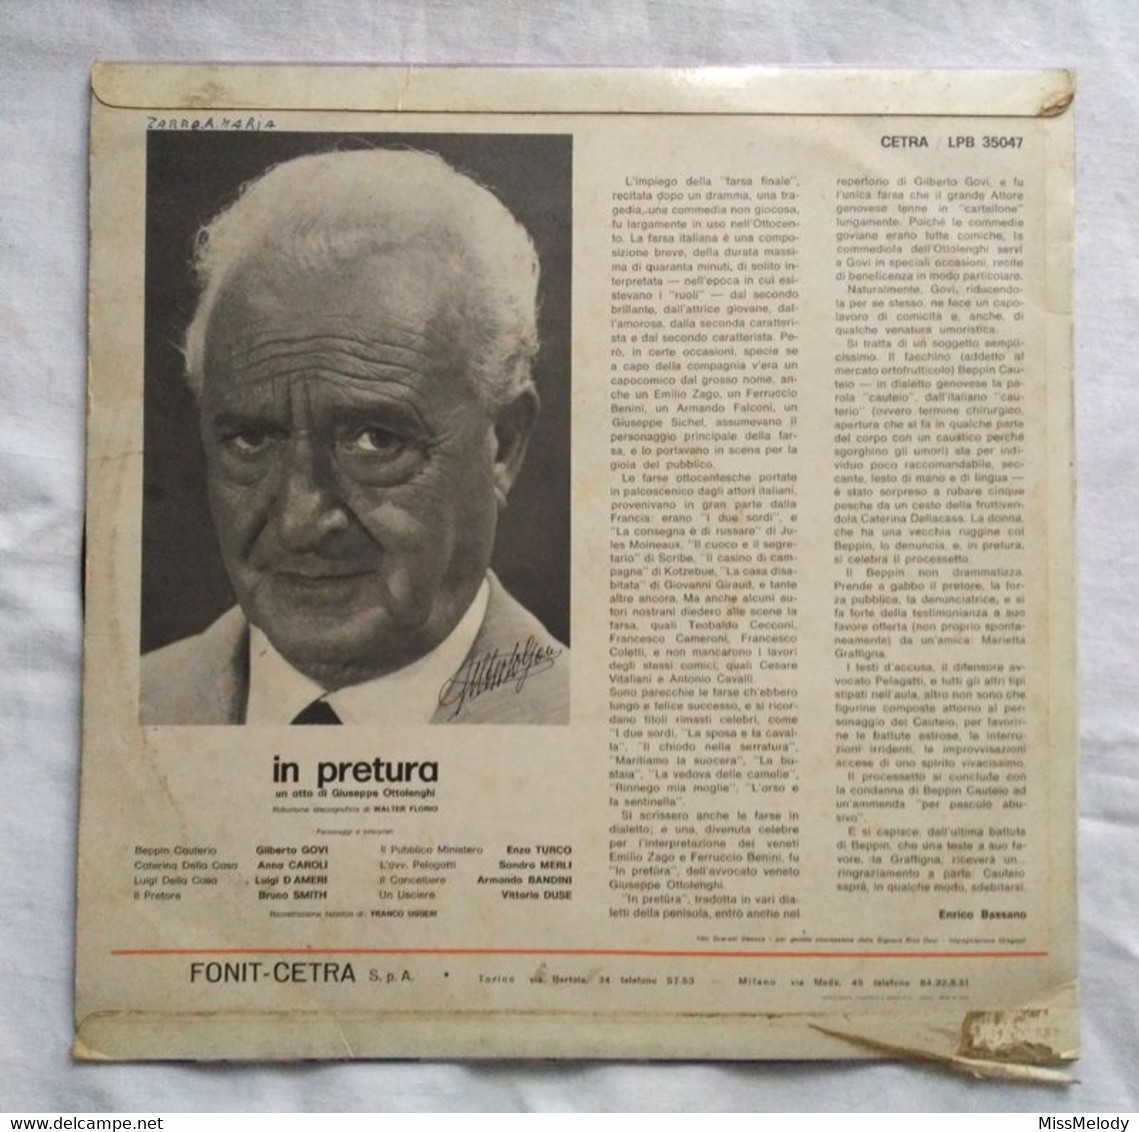 LP VINILE 33" GILBERTO GOVI "In Pretura" CETRA Commedia Teatro Italiano Dialetto Genovese Vintage LPB35047 - Cómica